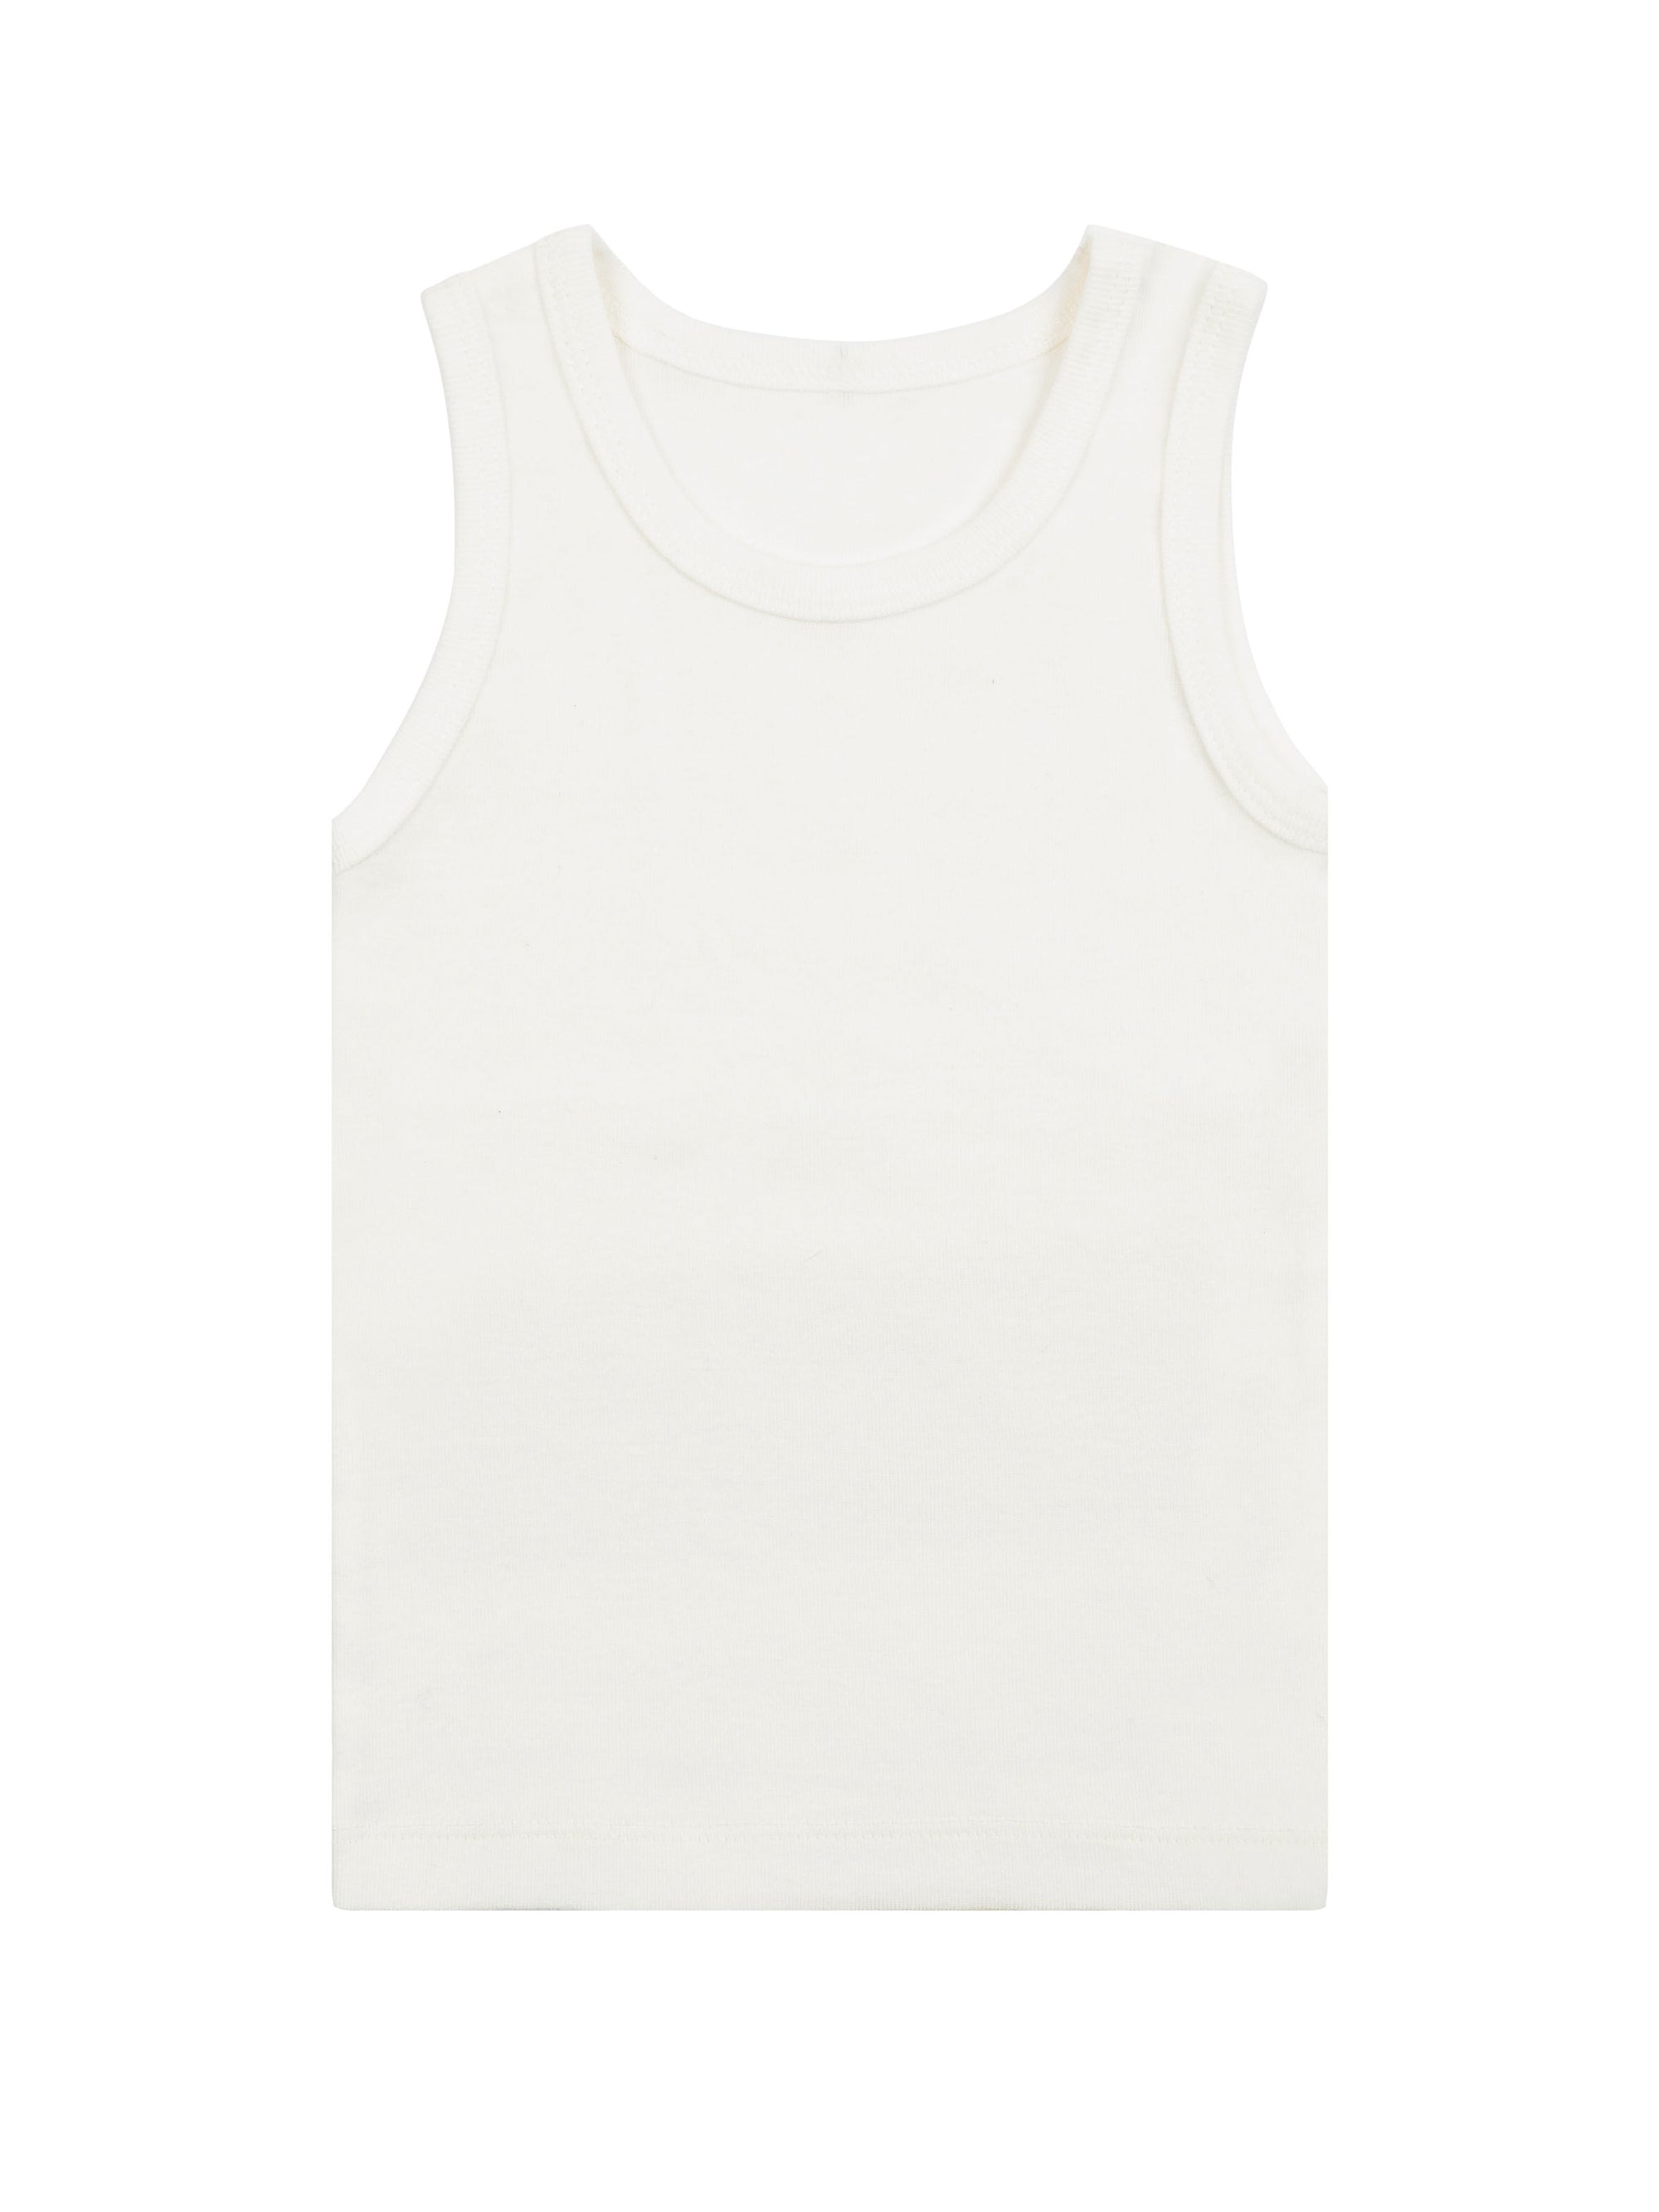 Girl's Undershirt/Tank Top- Organic White